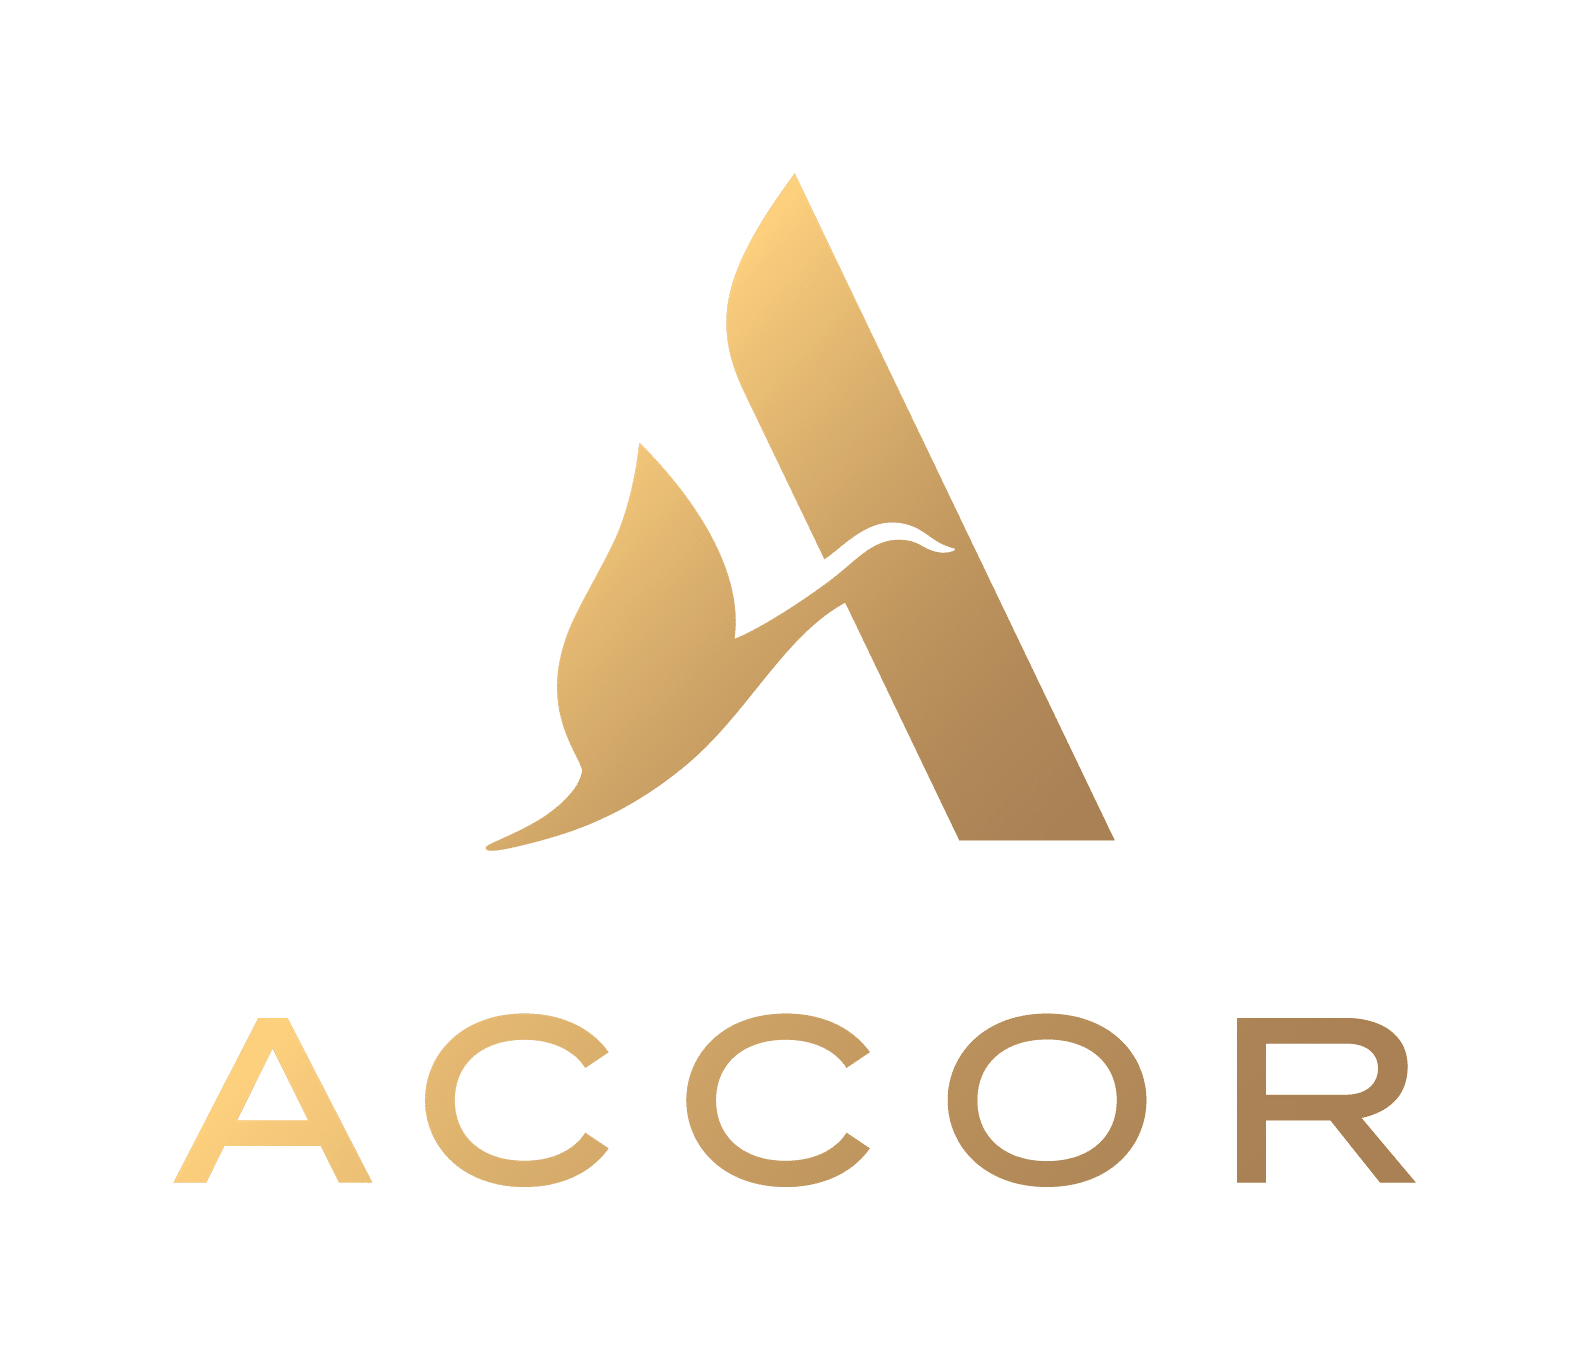 Accor company logo